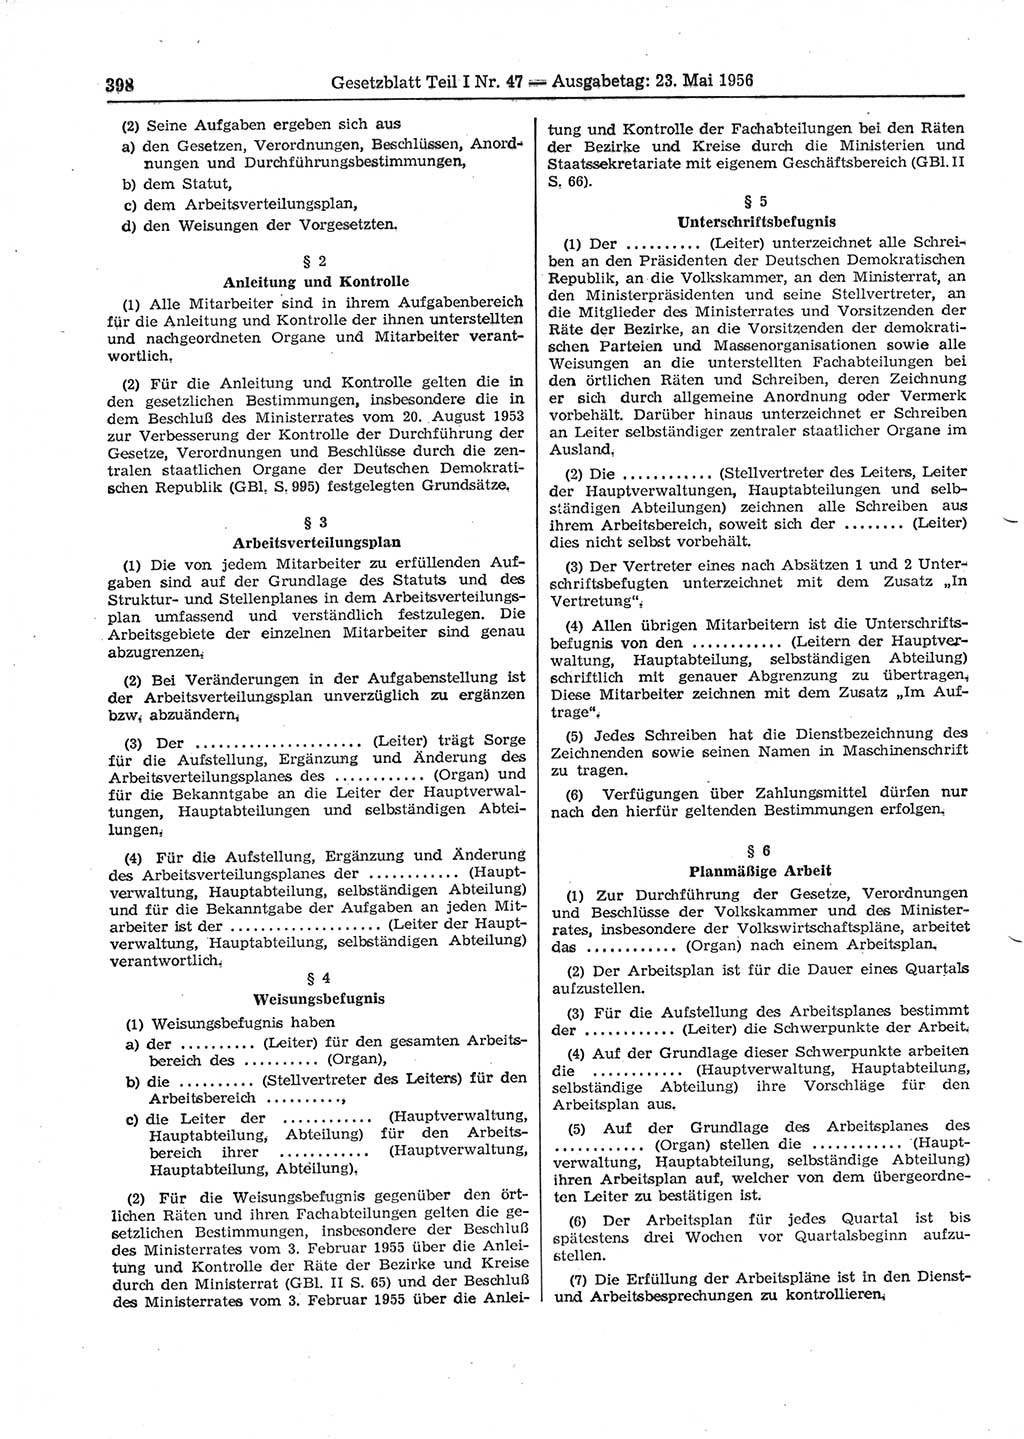 Gesetzblatt (GBl.) der Deutschen Demokratischen Republik (DDR) Teil Ⅰ 1956, Seite 398 (GBl. DDR Ⅰ 1956, S. 398)